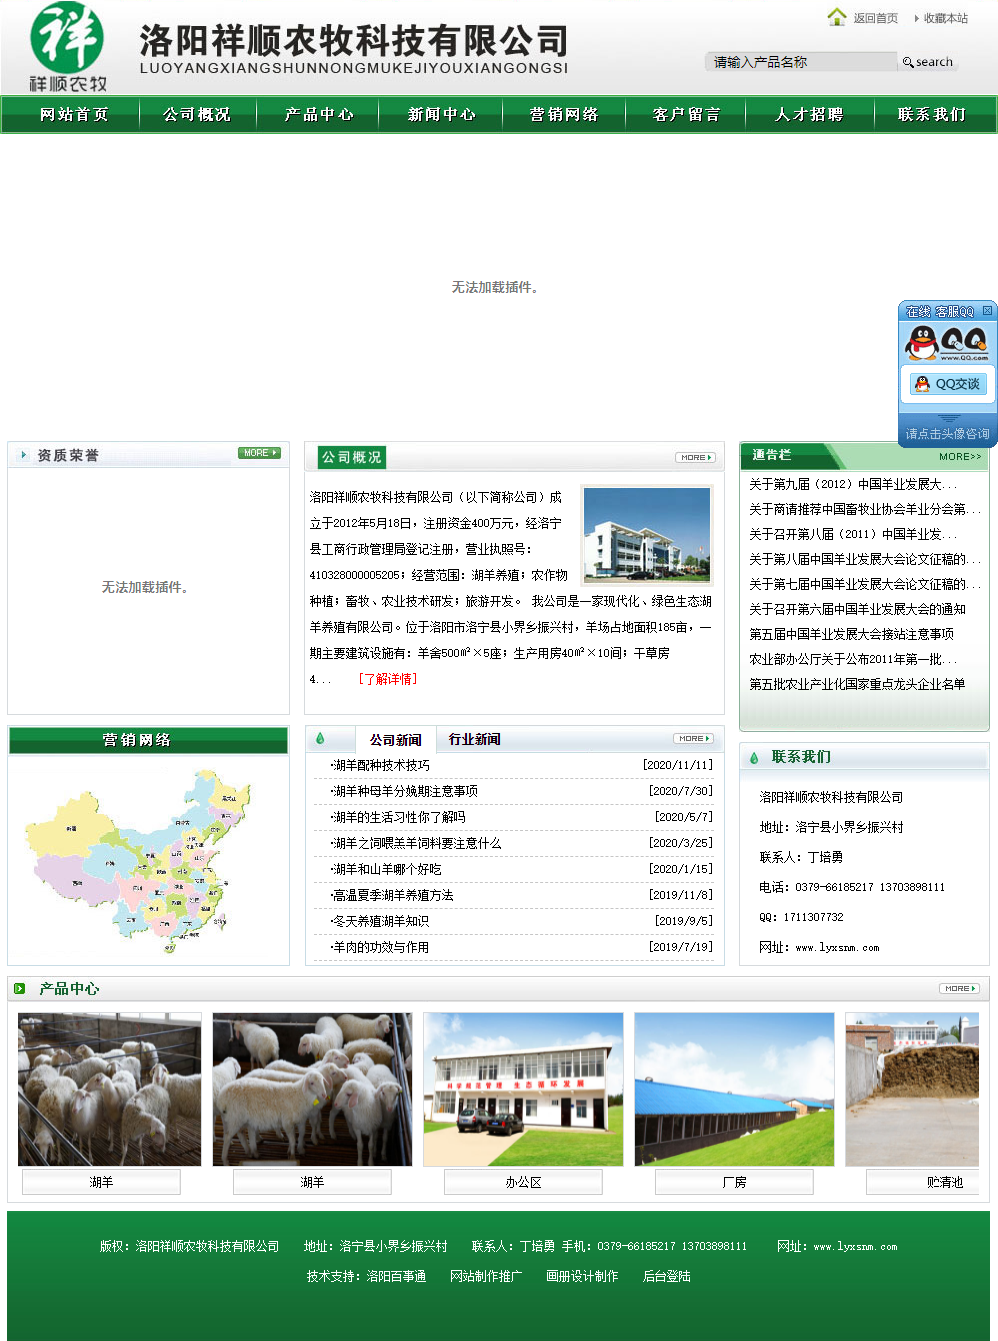 洛阳祥顺农牧科技有限公司网站案例